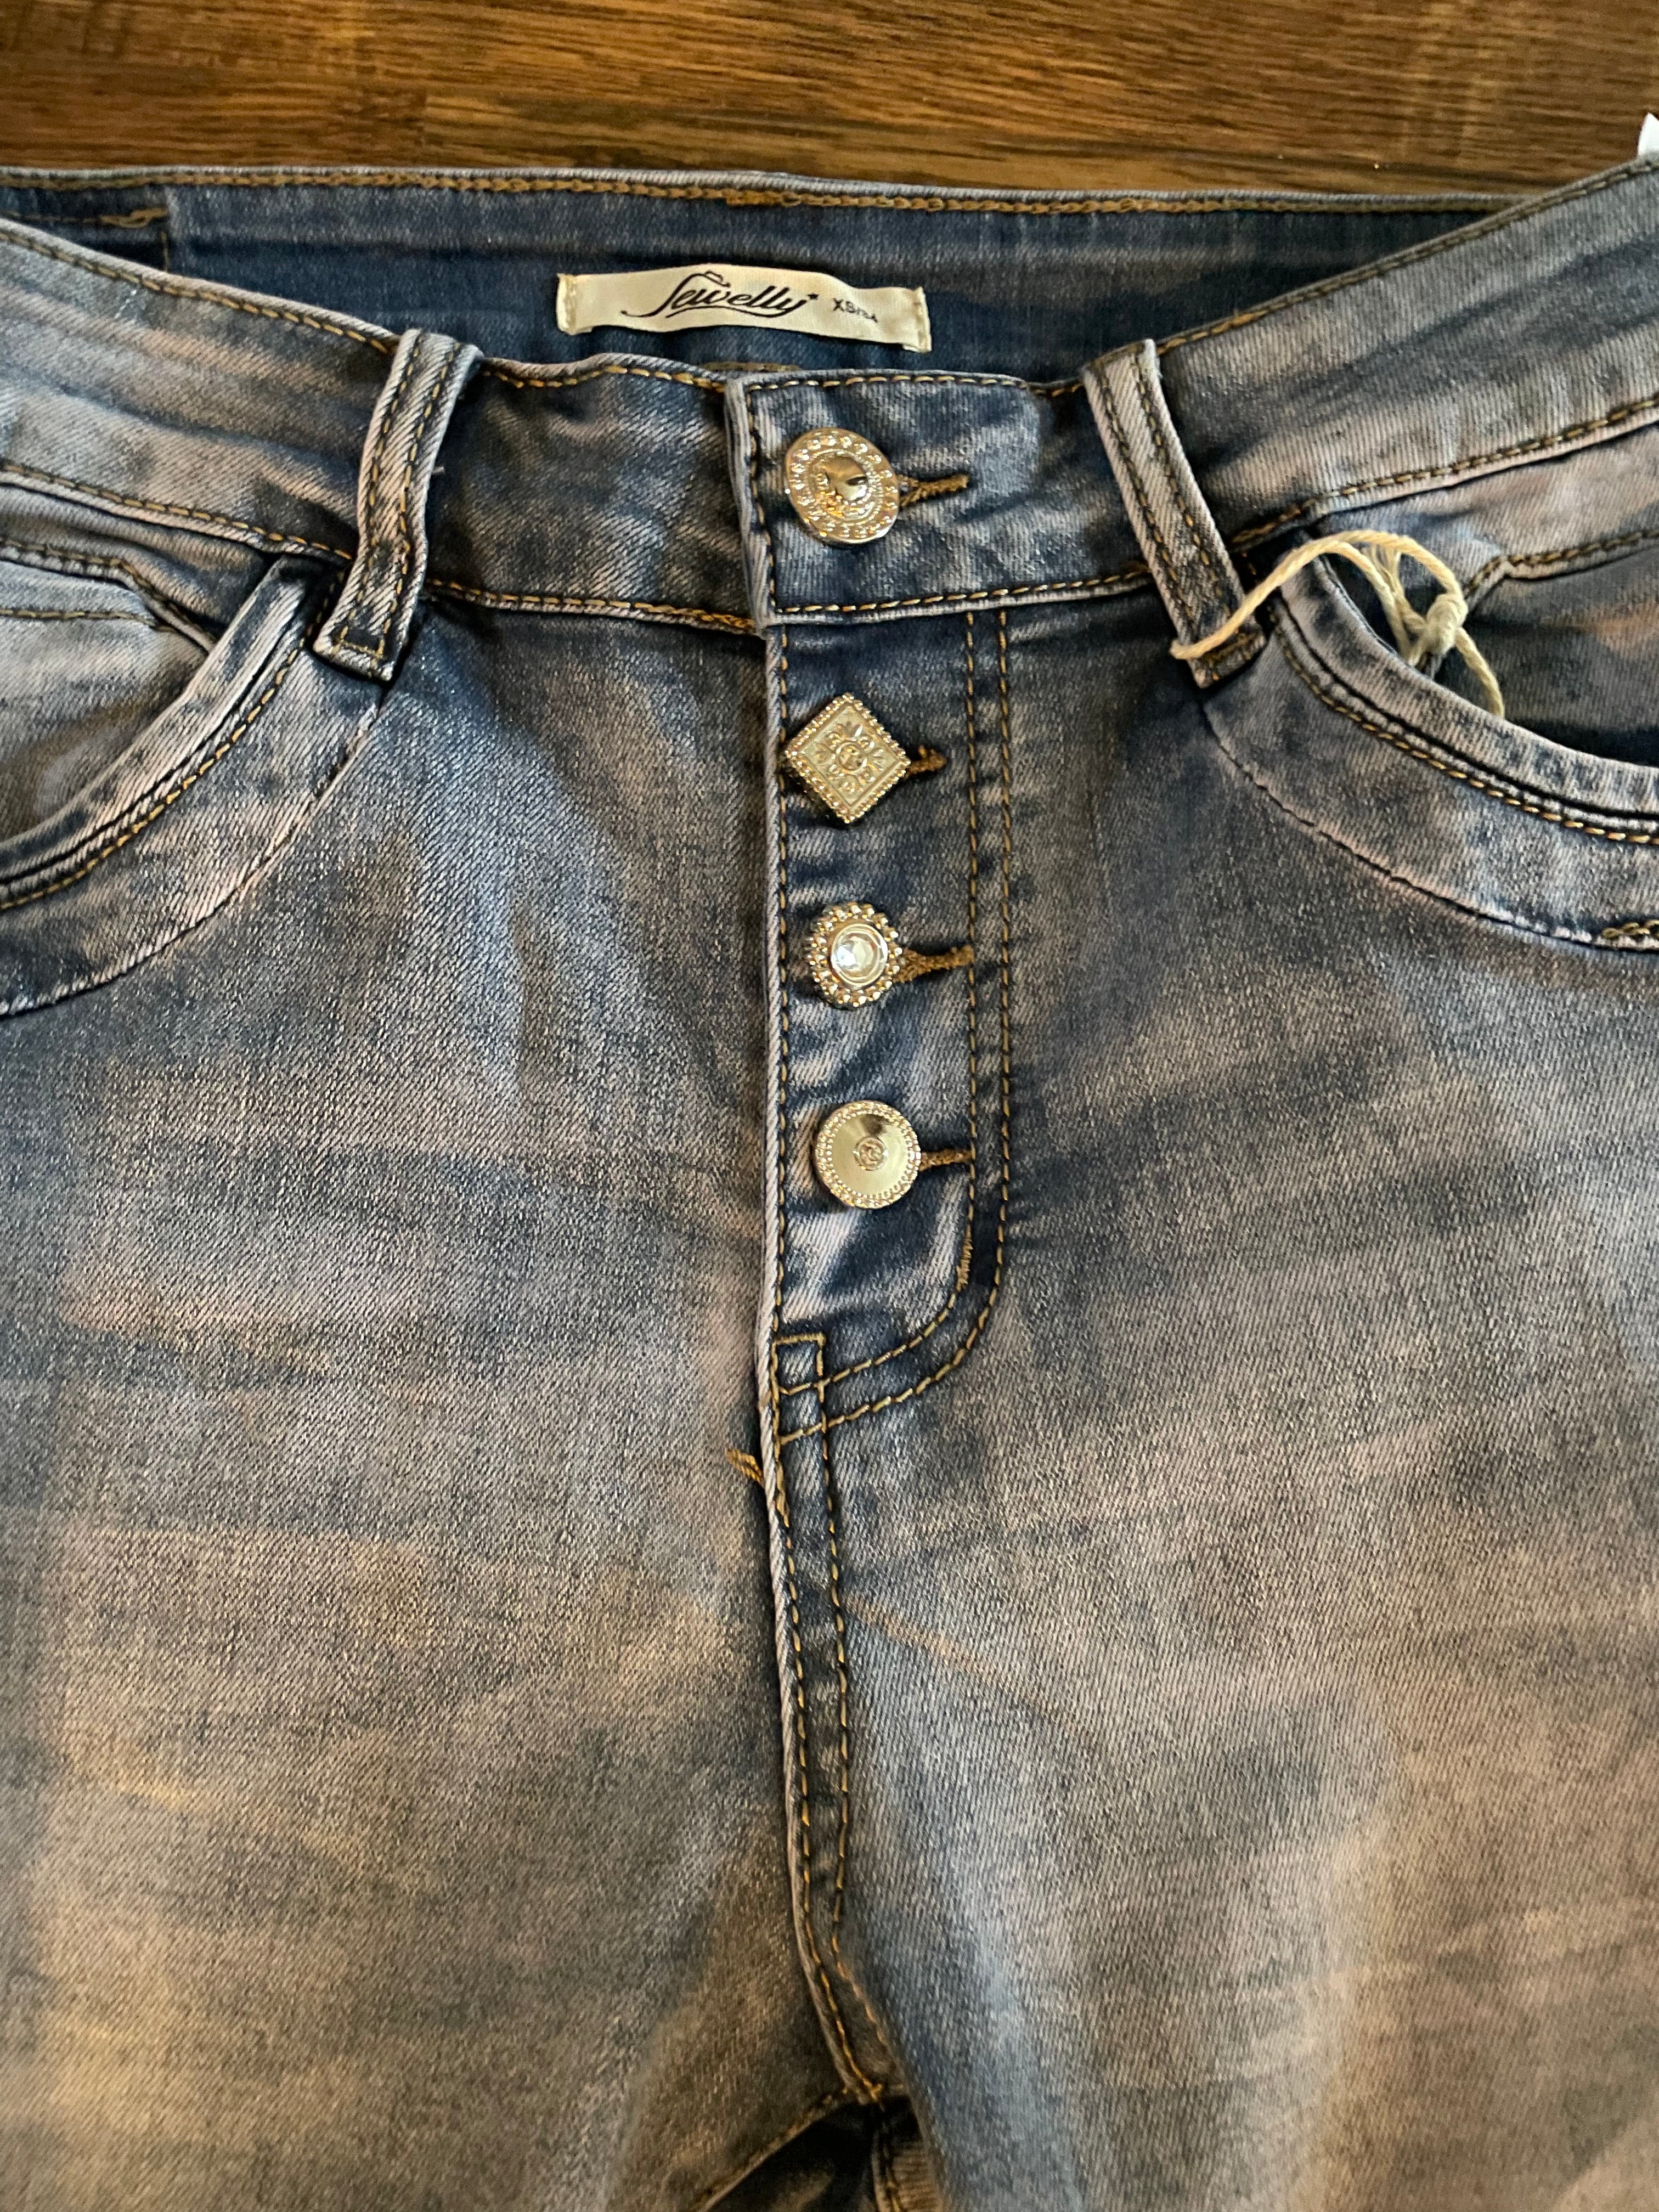 pepermunt schoonmaken Steken Jewelly jeans met zilveren knopen – Nancfashion